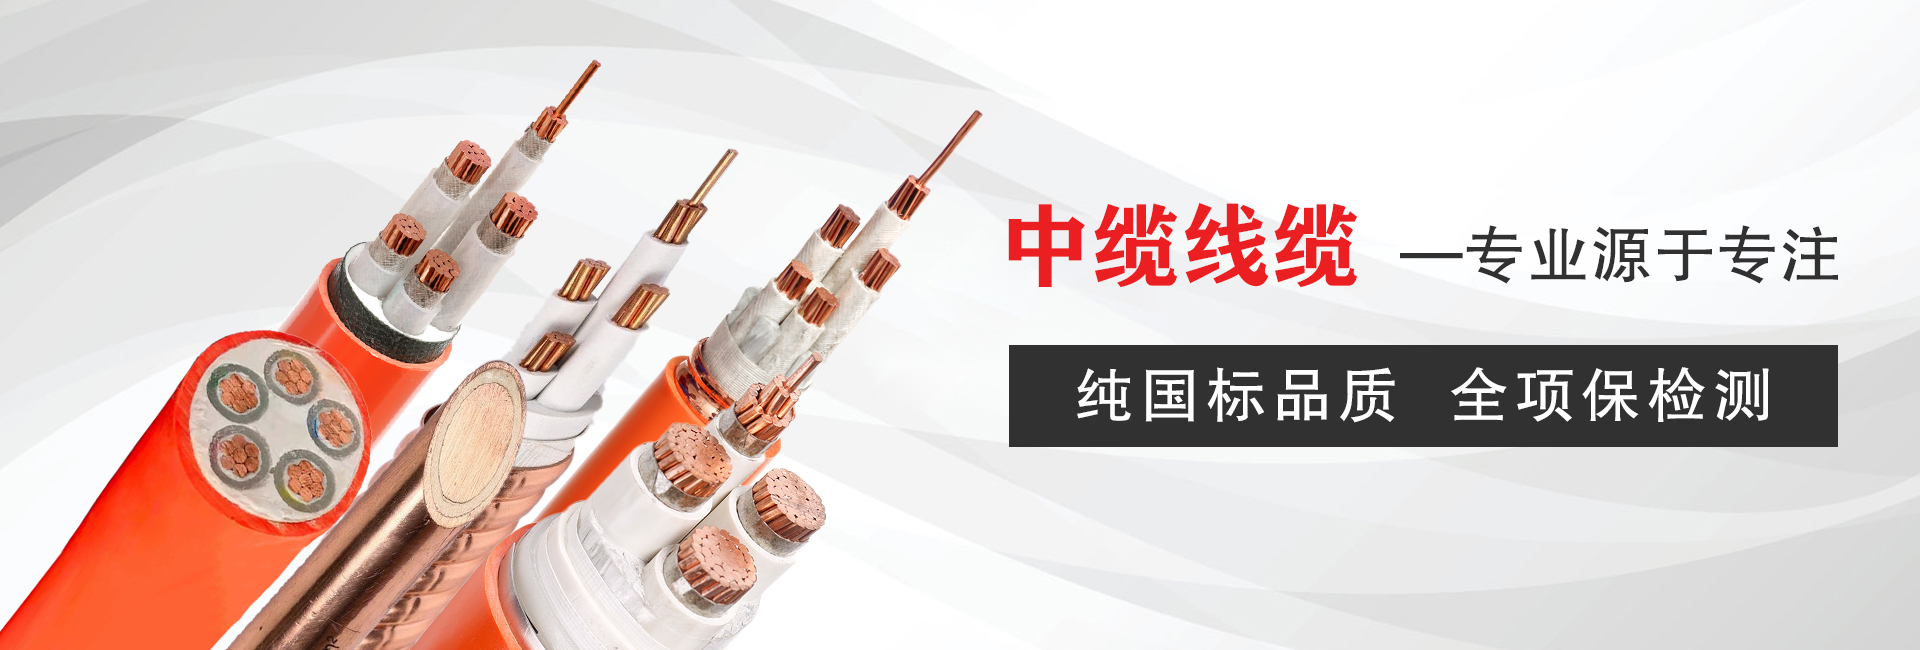 郑州中缆电线电缆有限公司